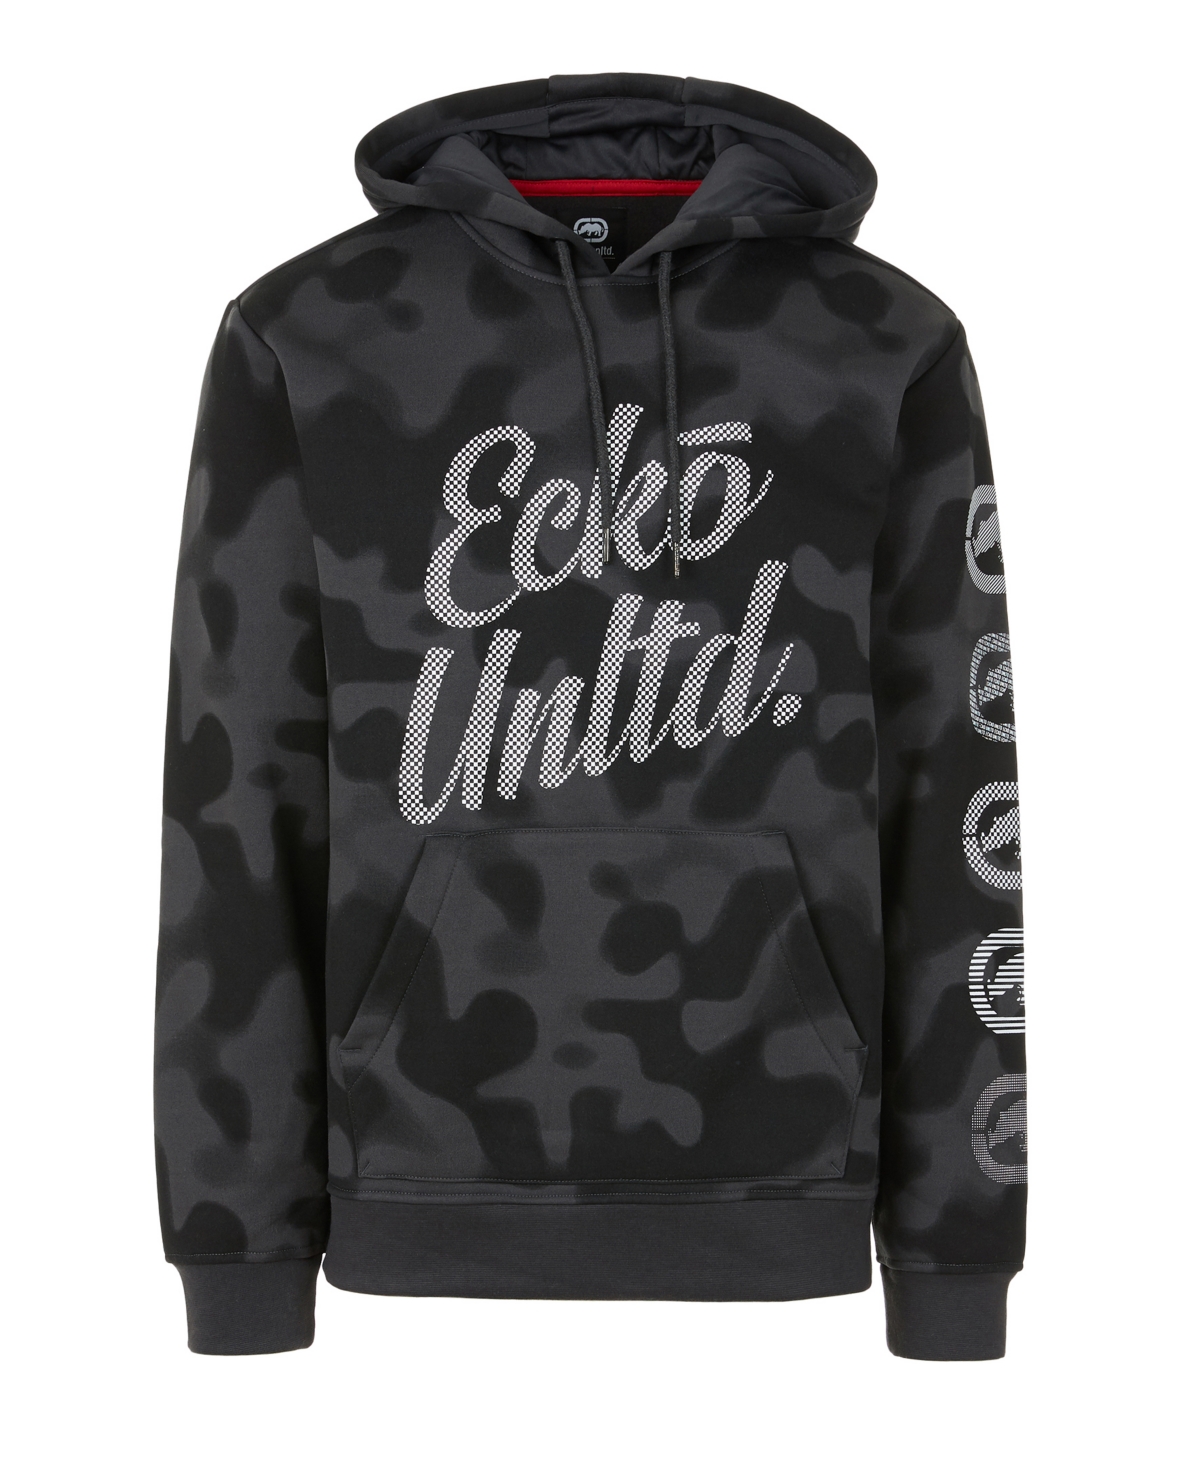 Ecko Unltd Men's 2 Color Camo Hoodie with Vert Rhino Repeat